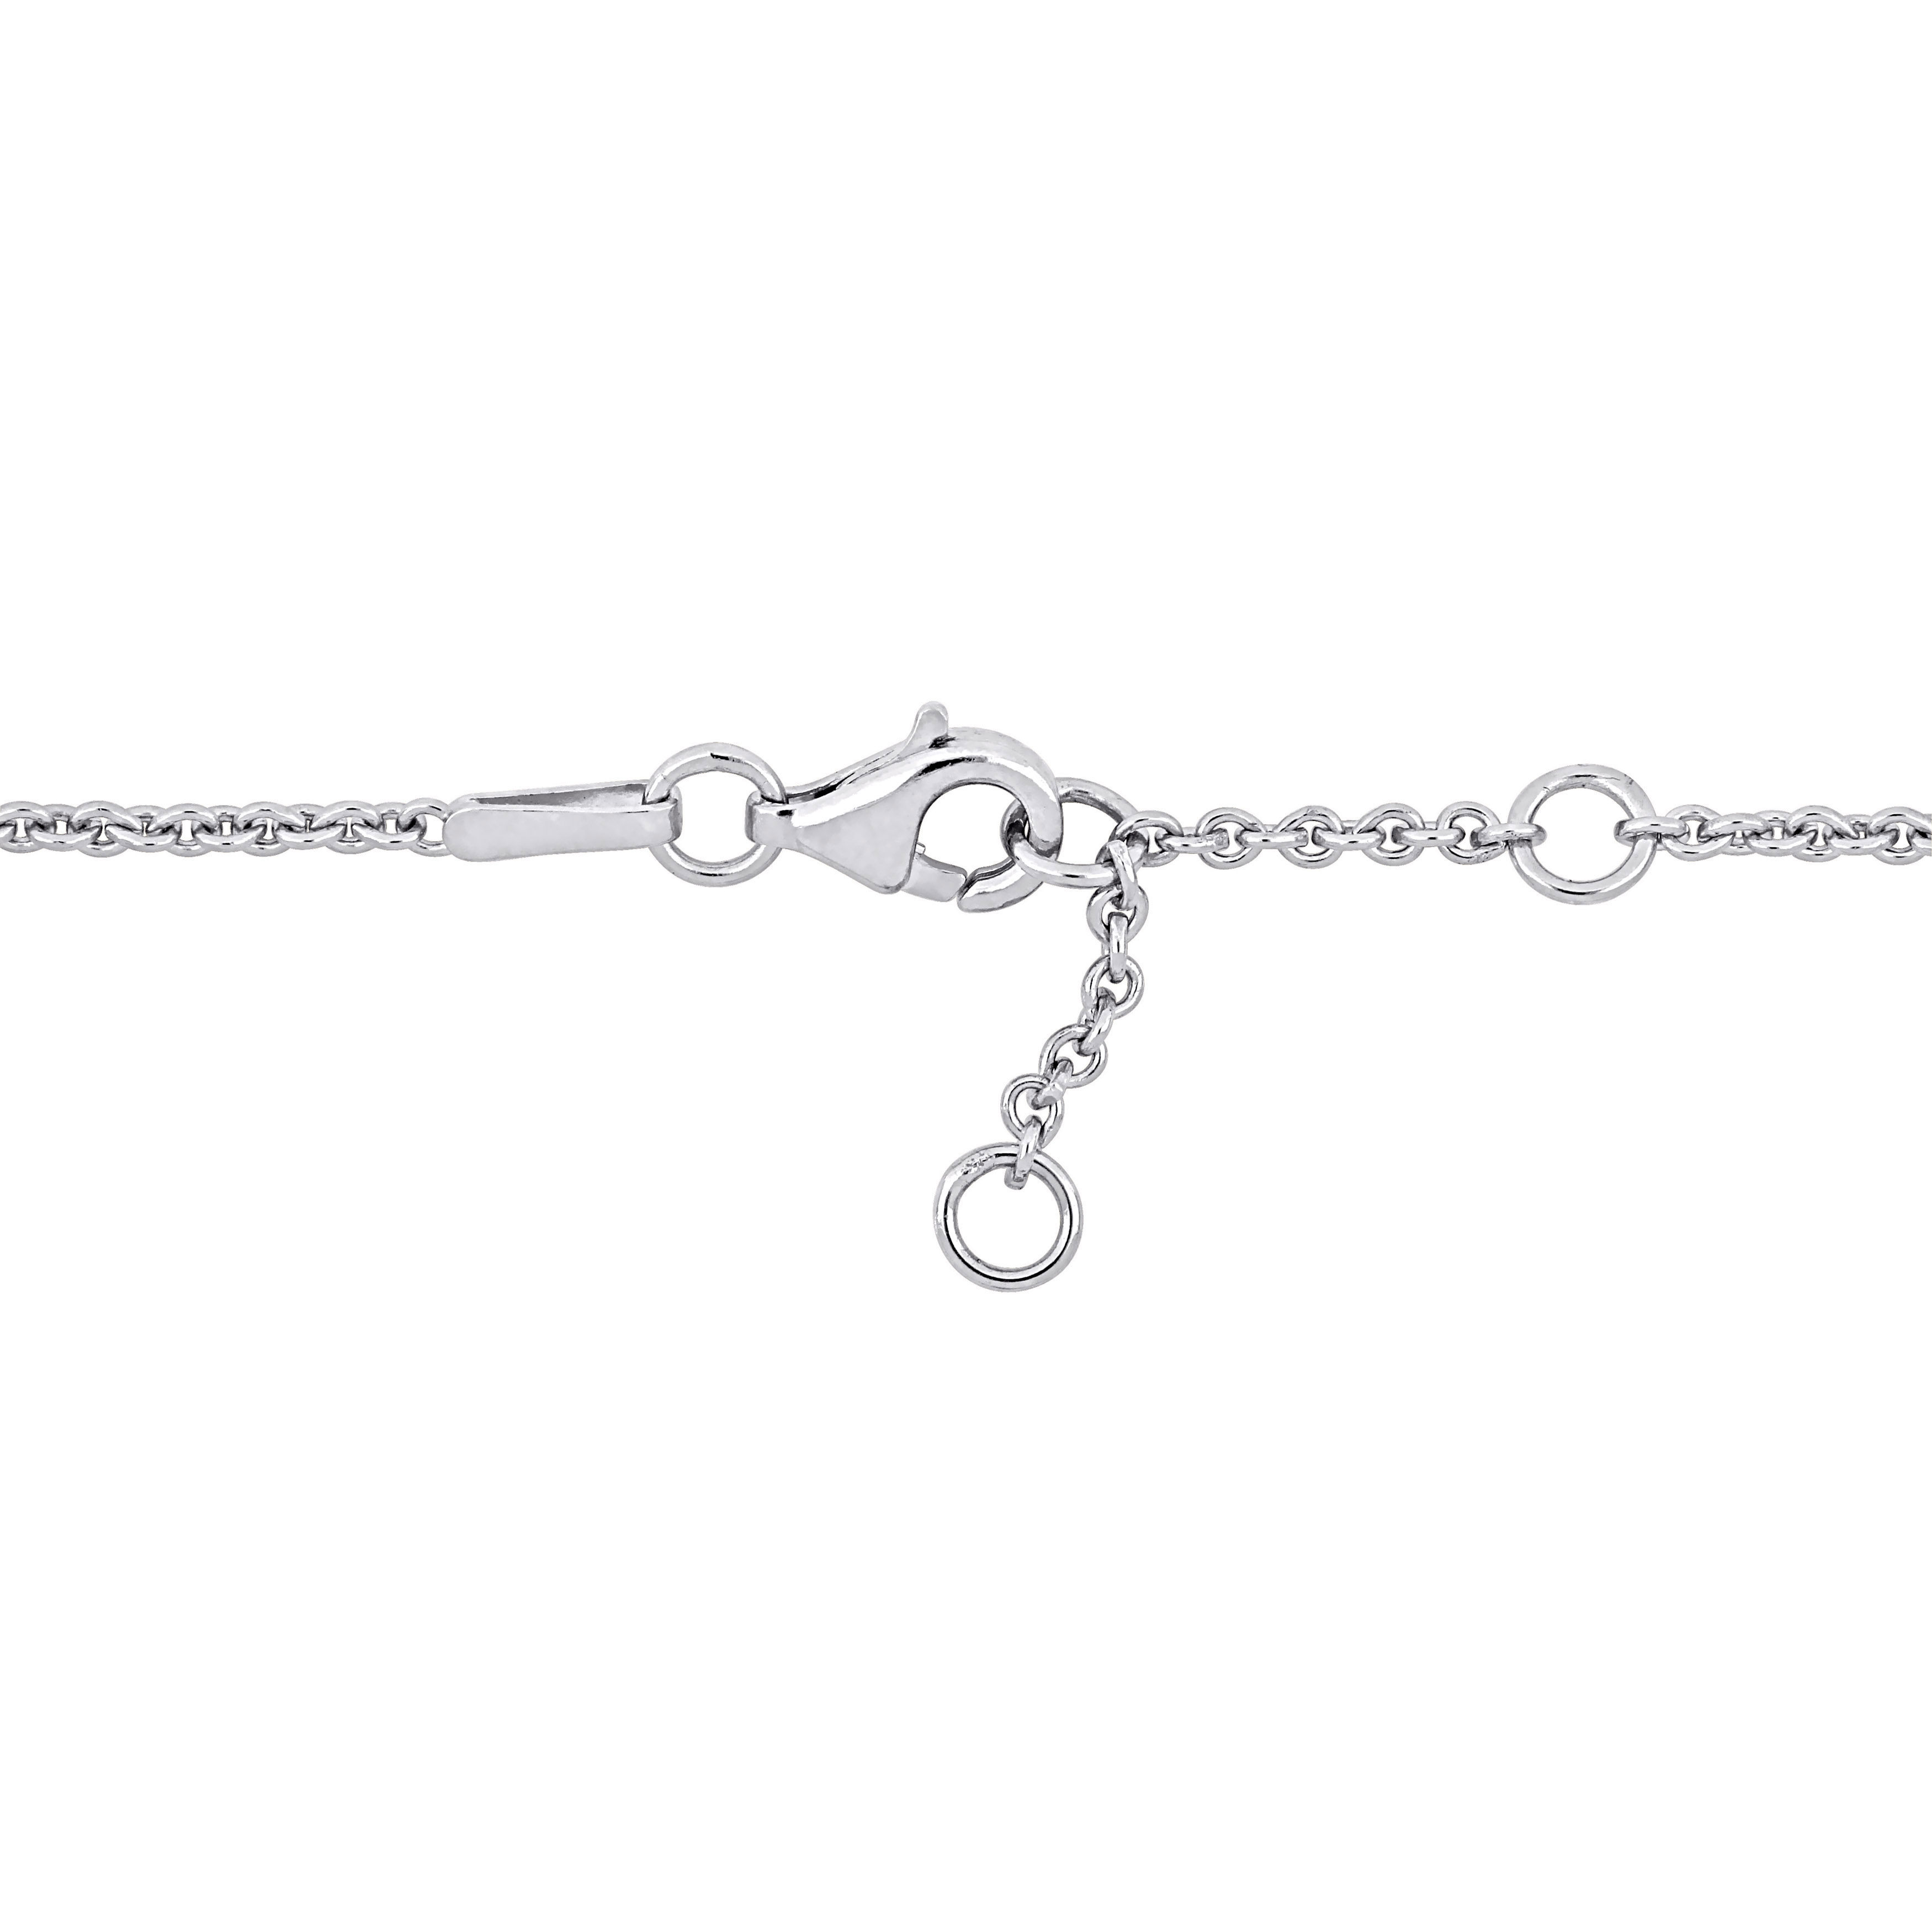 MOM Heart & Key Charm 7 Bracelet in Sterling Silver